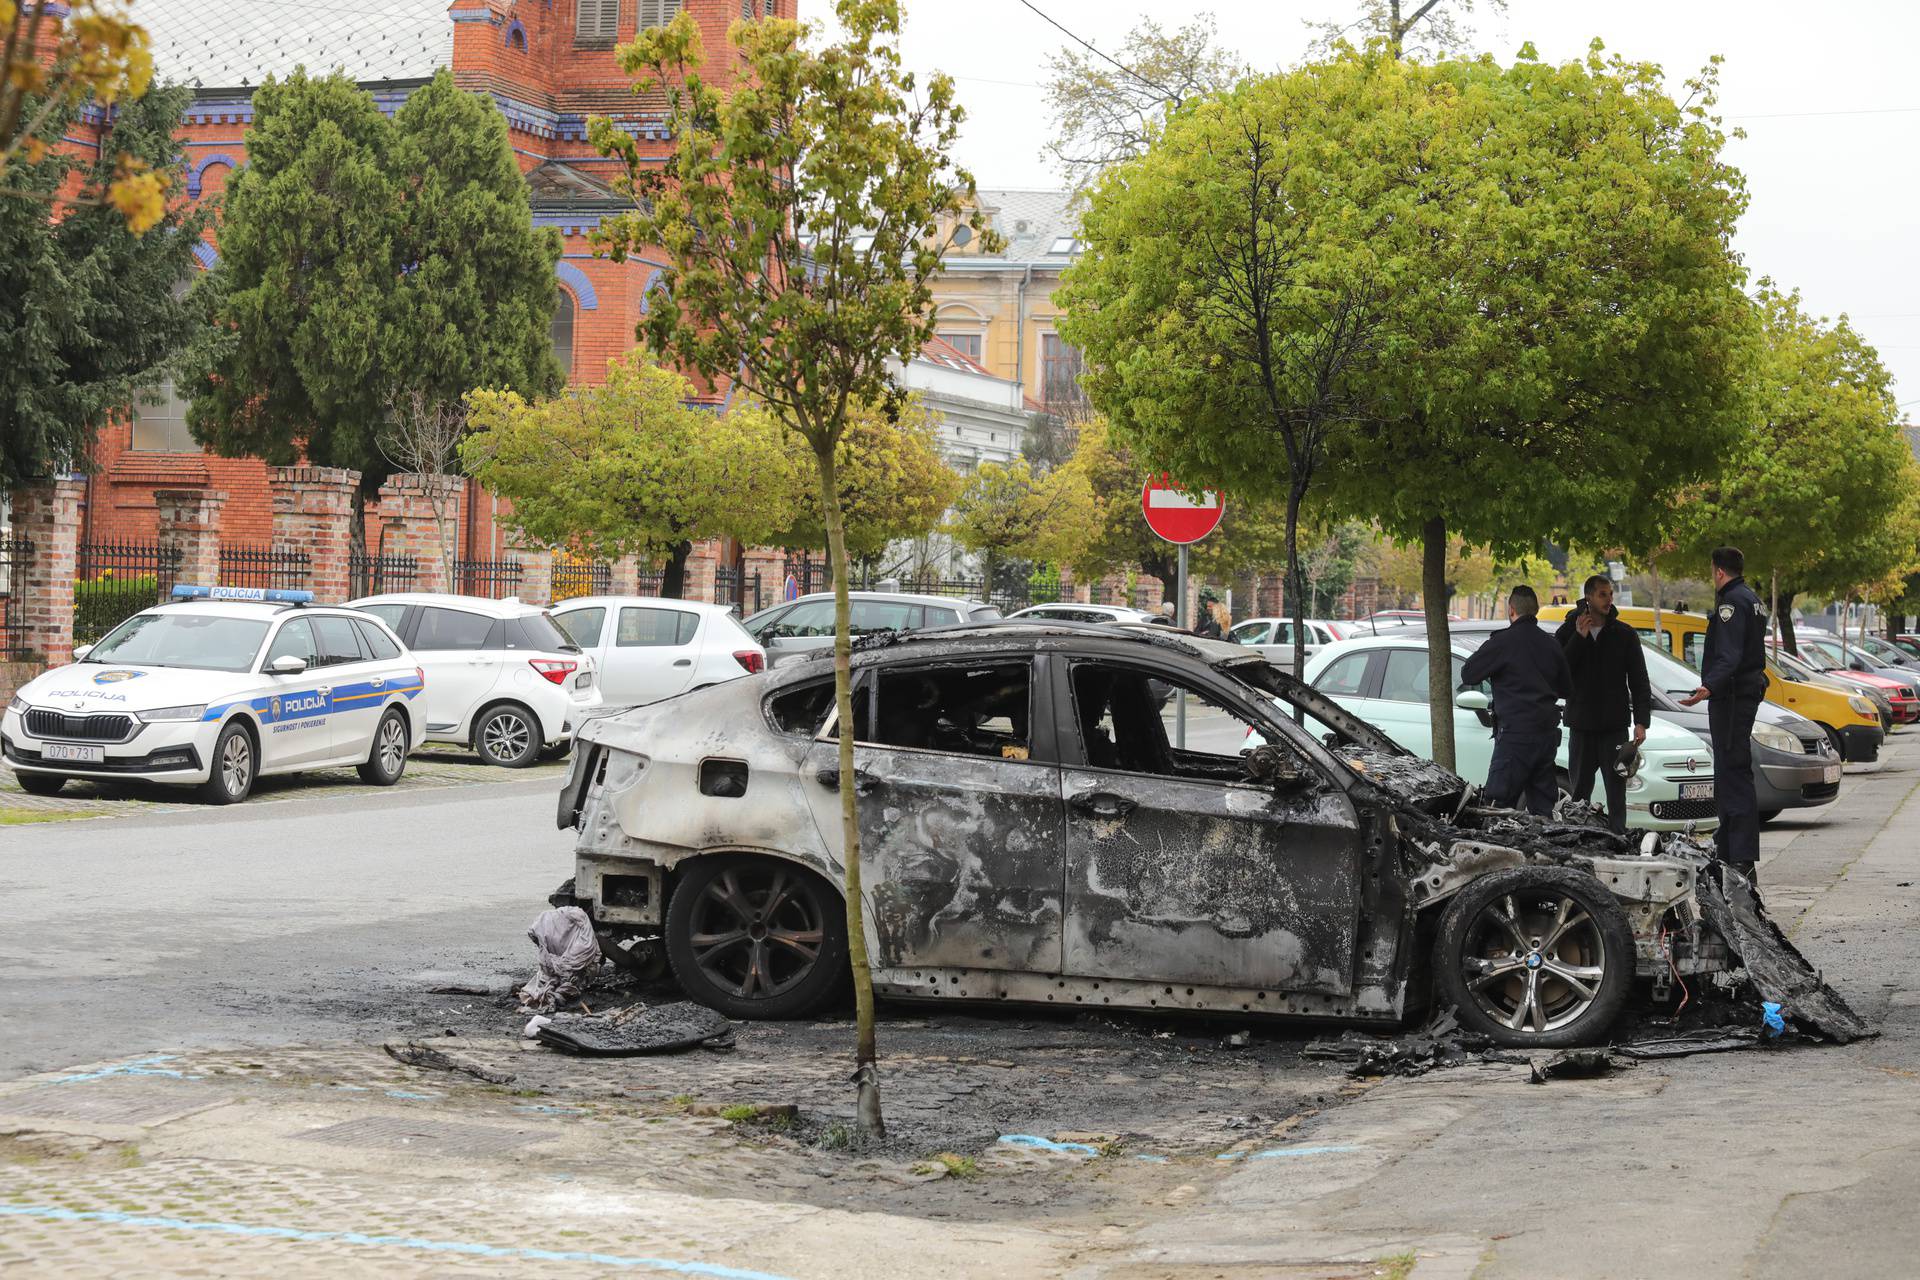 U Osijeku se zapalio automobil